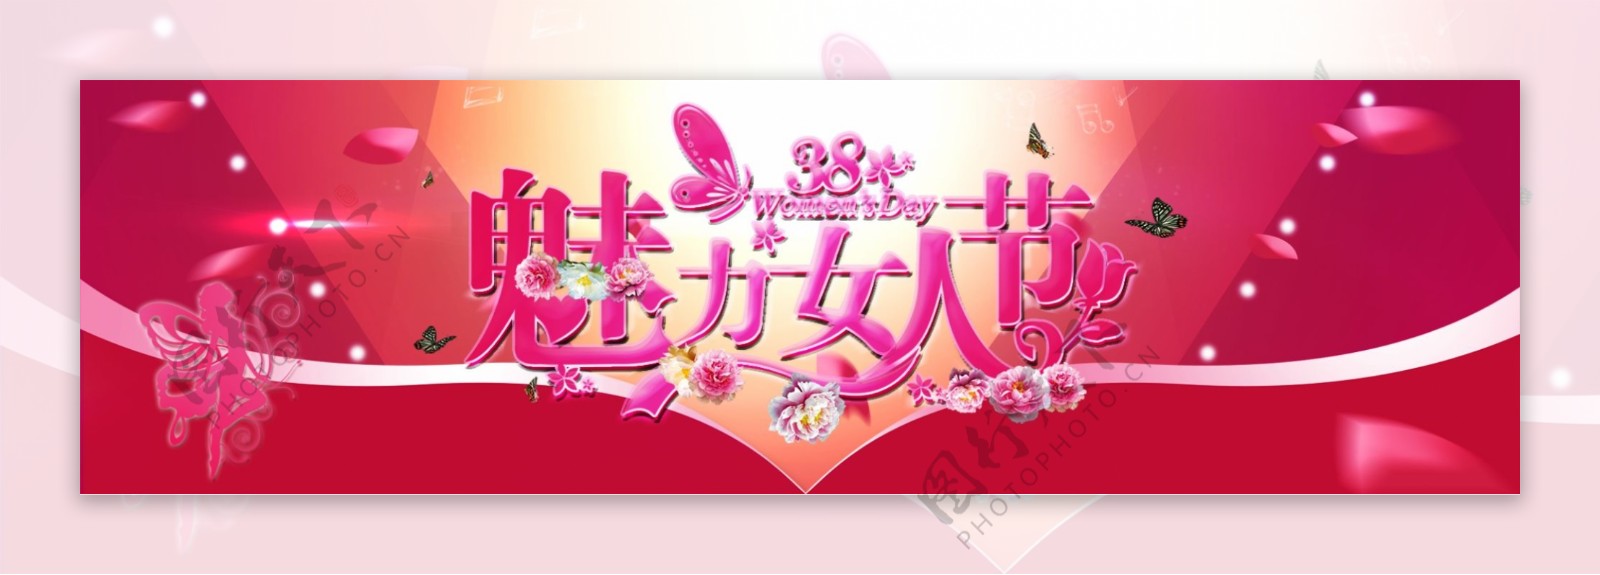 3.8妇女节Banner